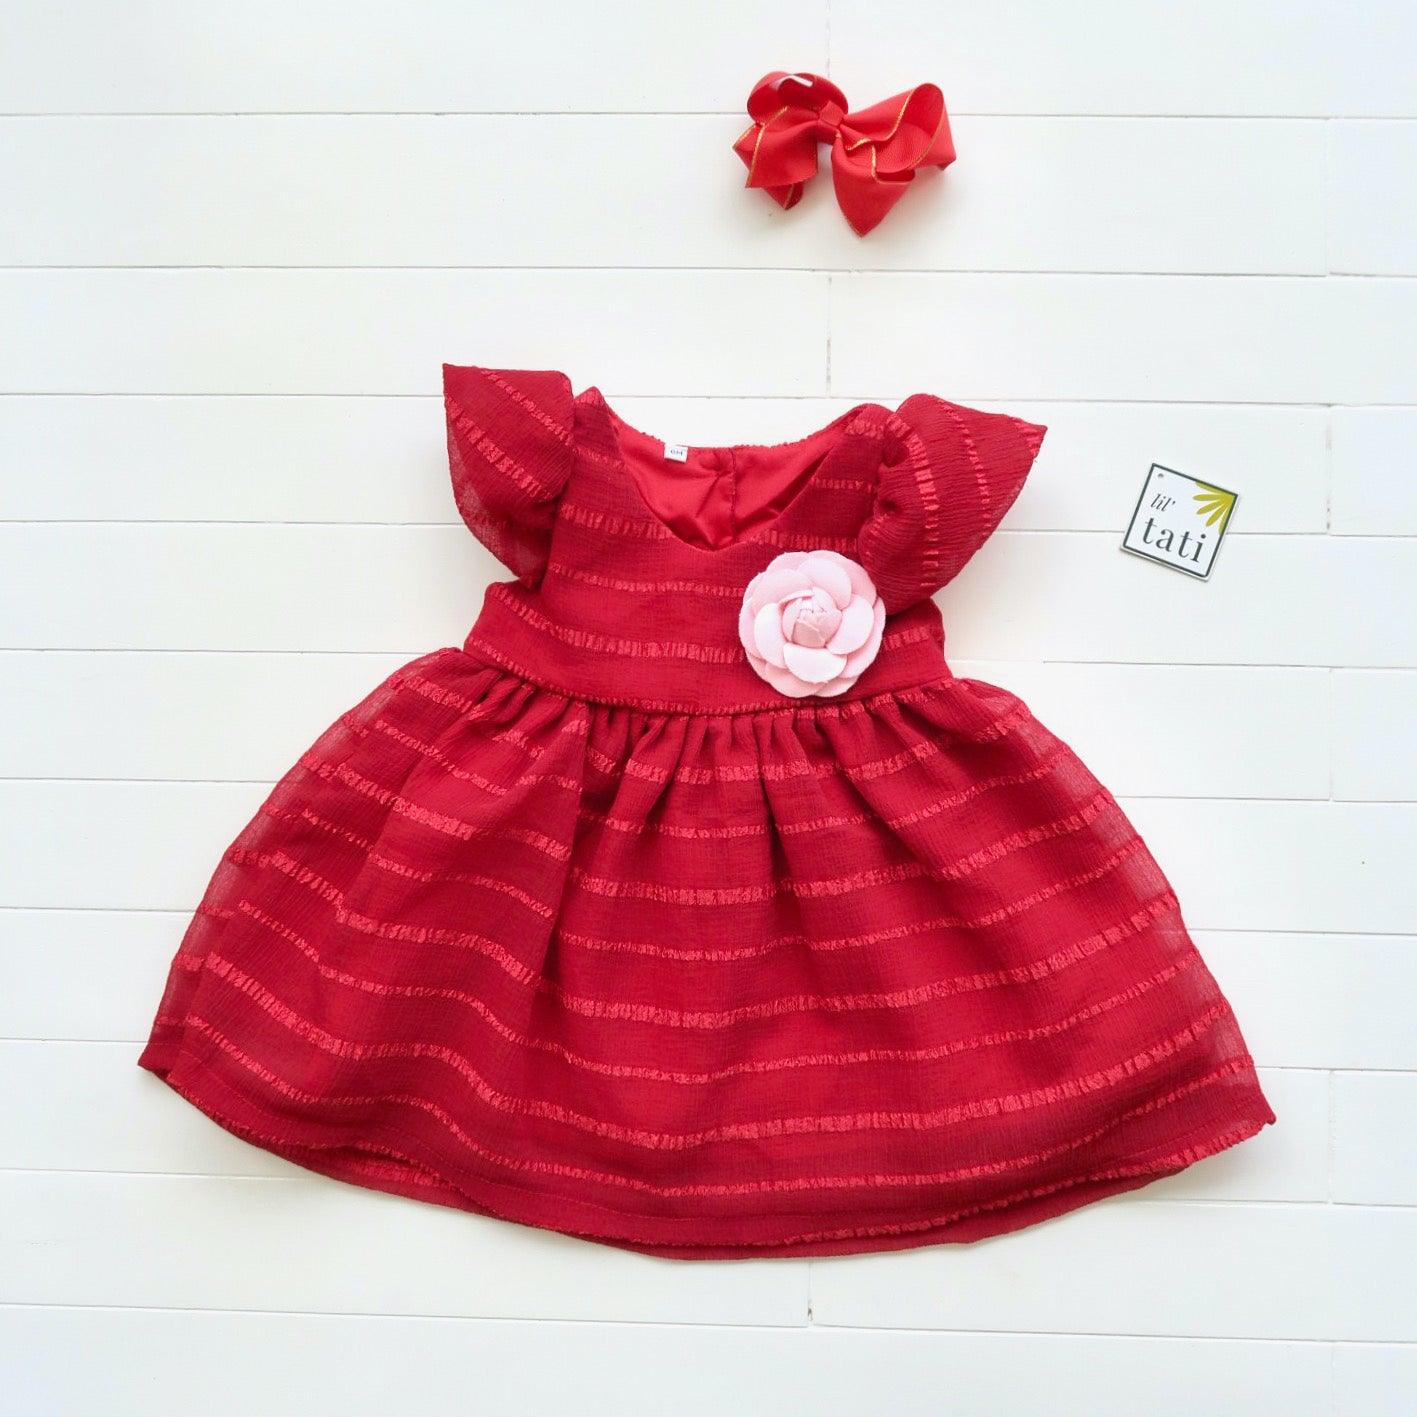 Lotus Dress in Red Shear Stripes - Lil' Tati